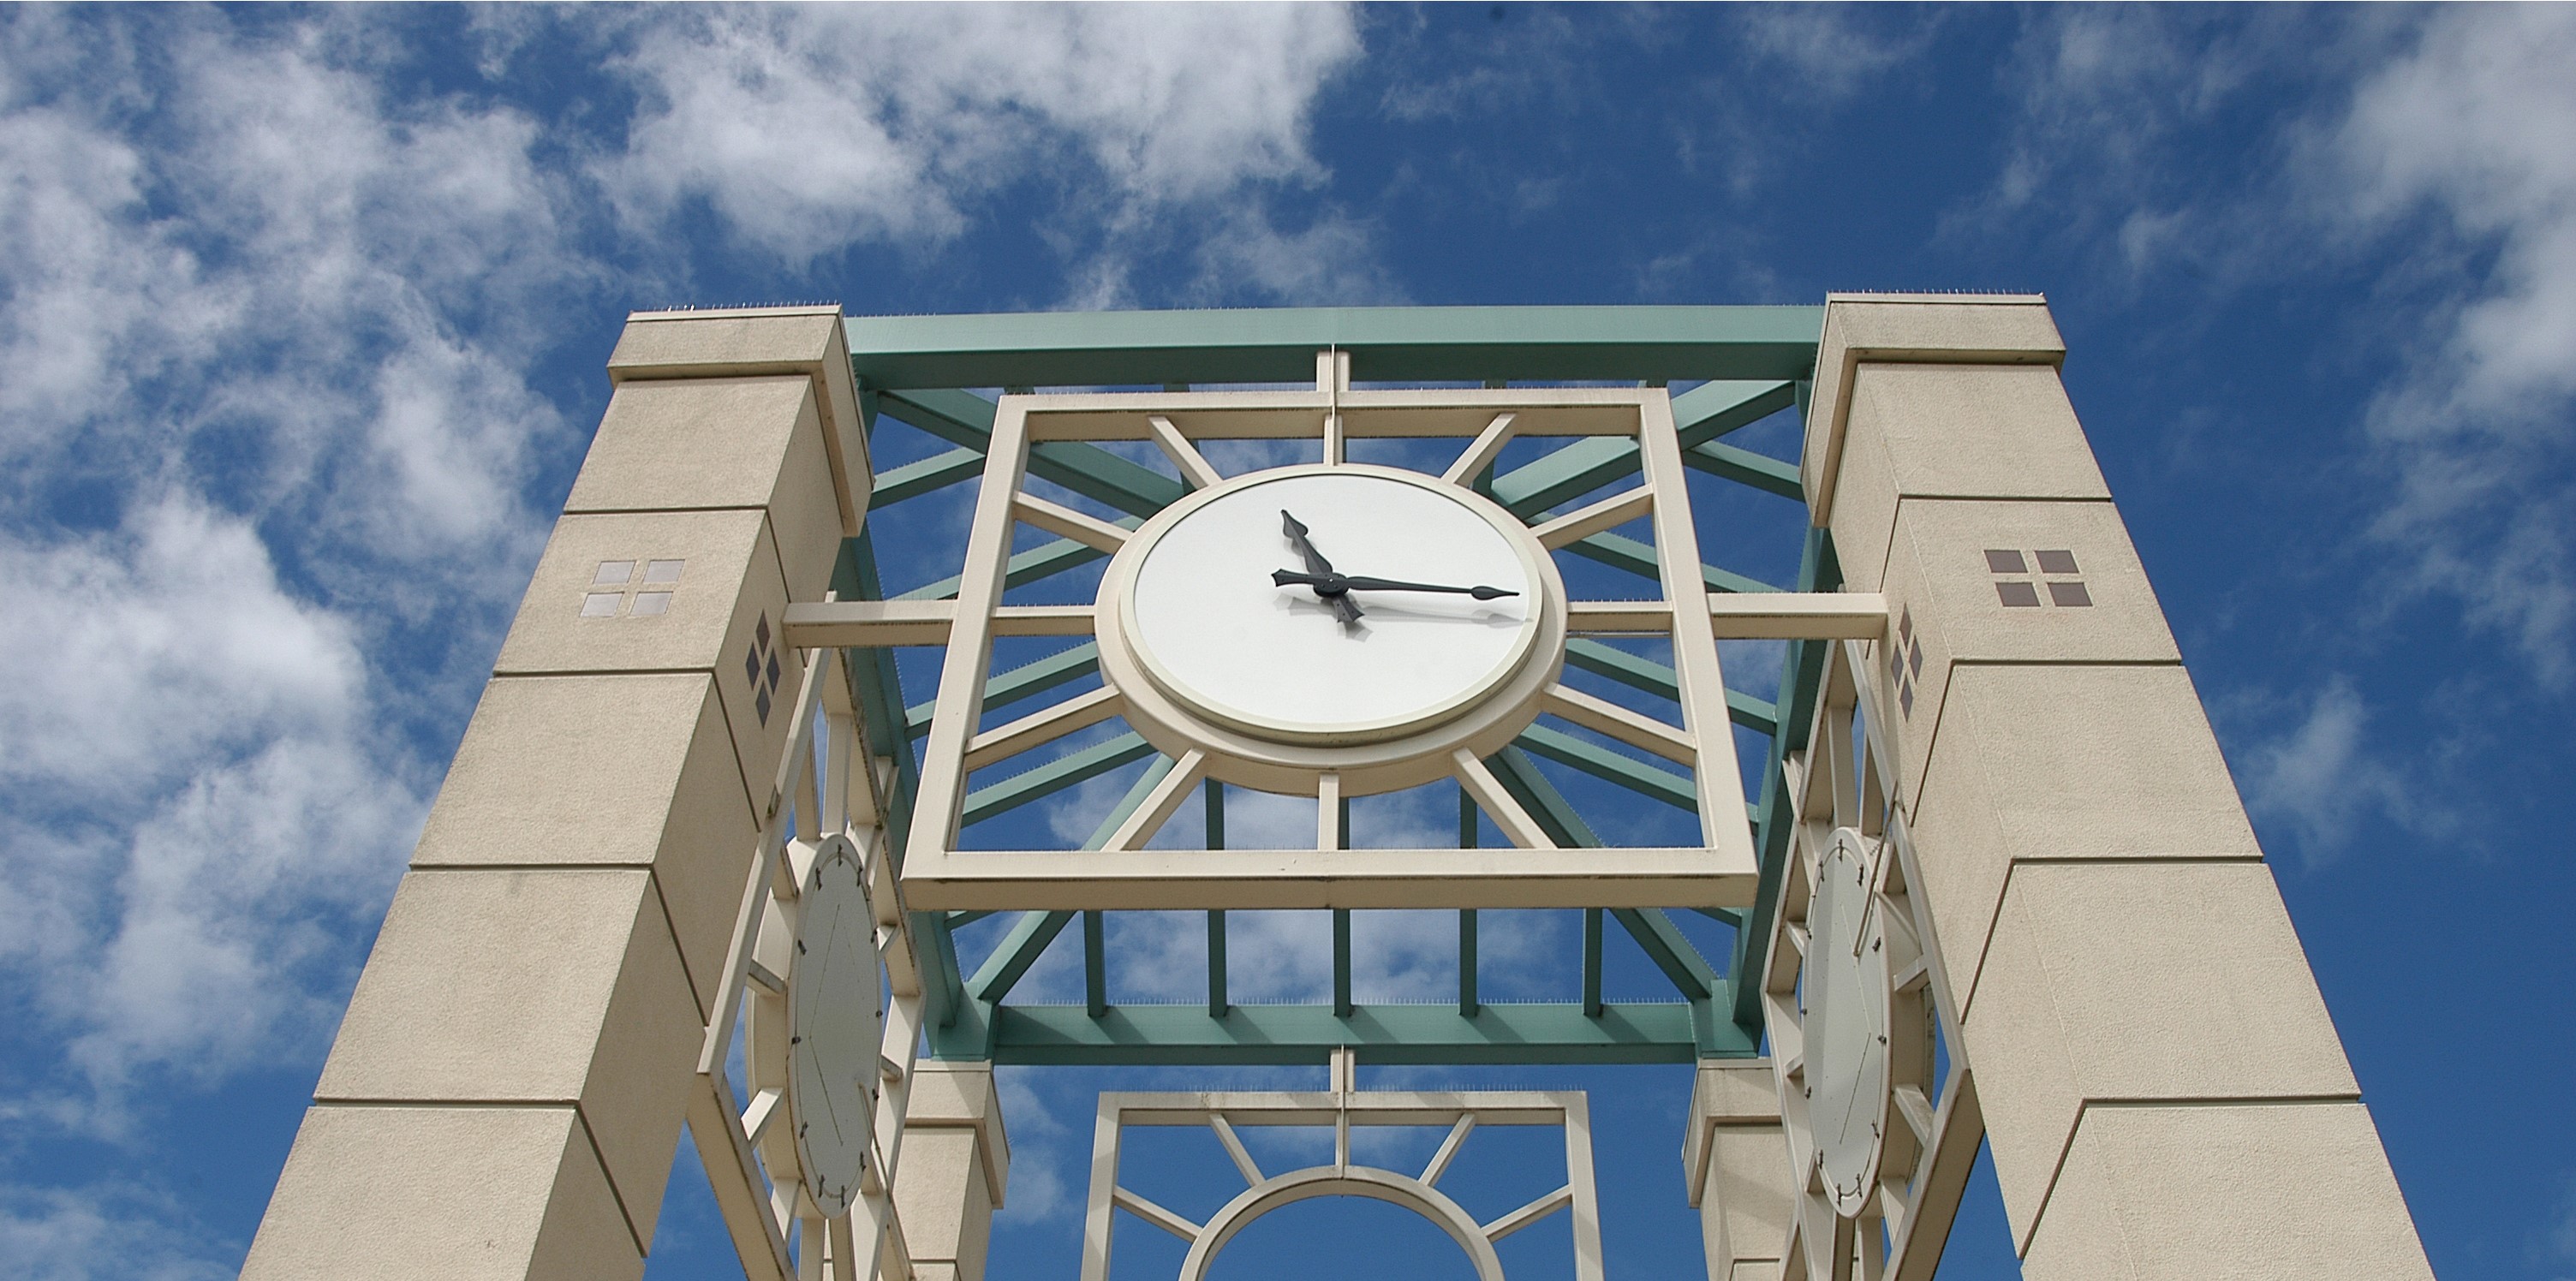 campus clock tower